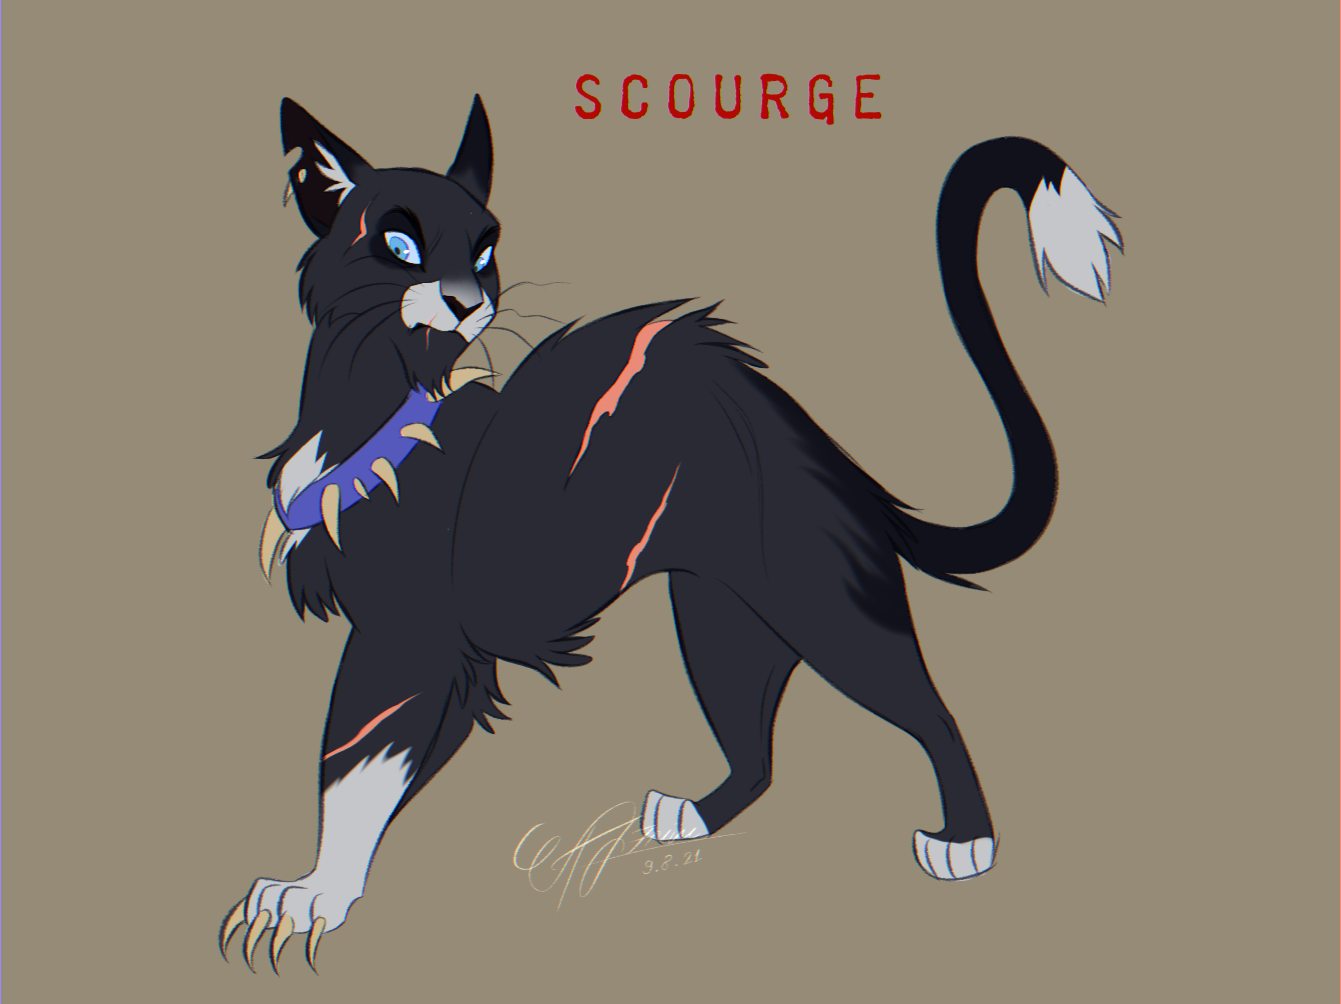 Scourge design - Warriors Cats by AngelDalet on DeviantArt